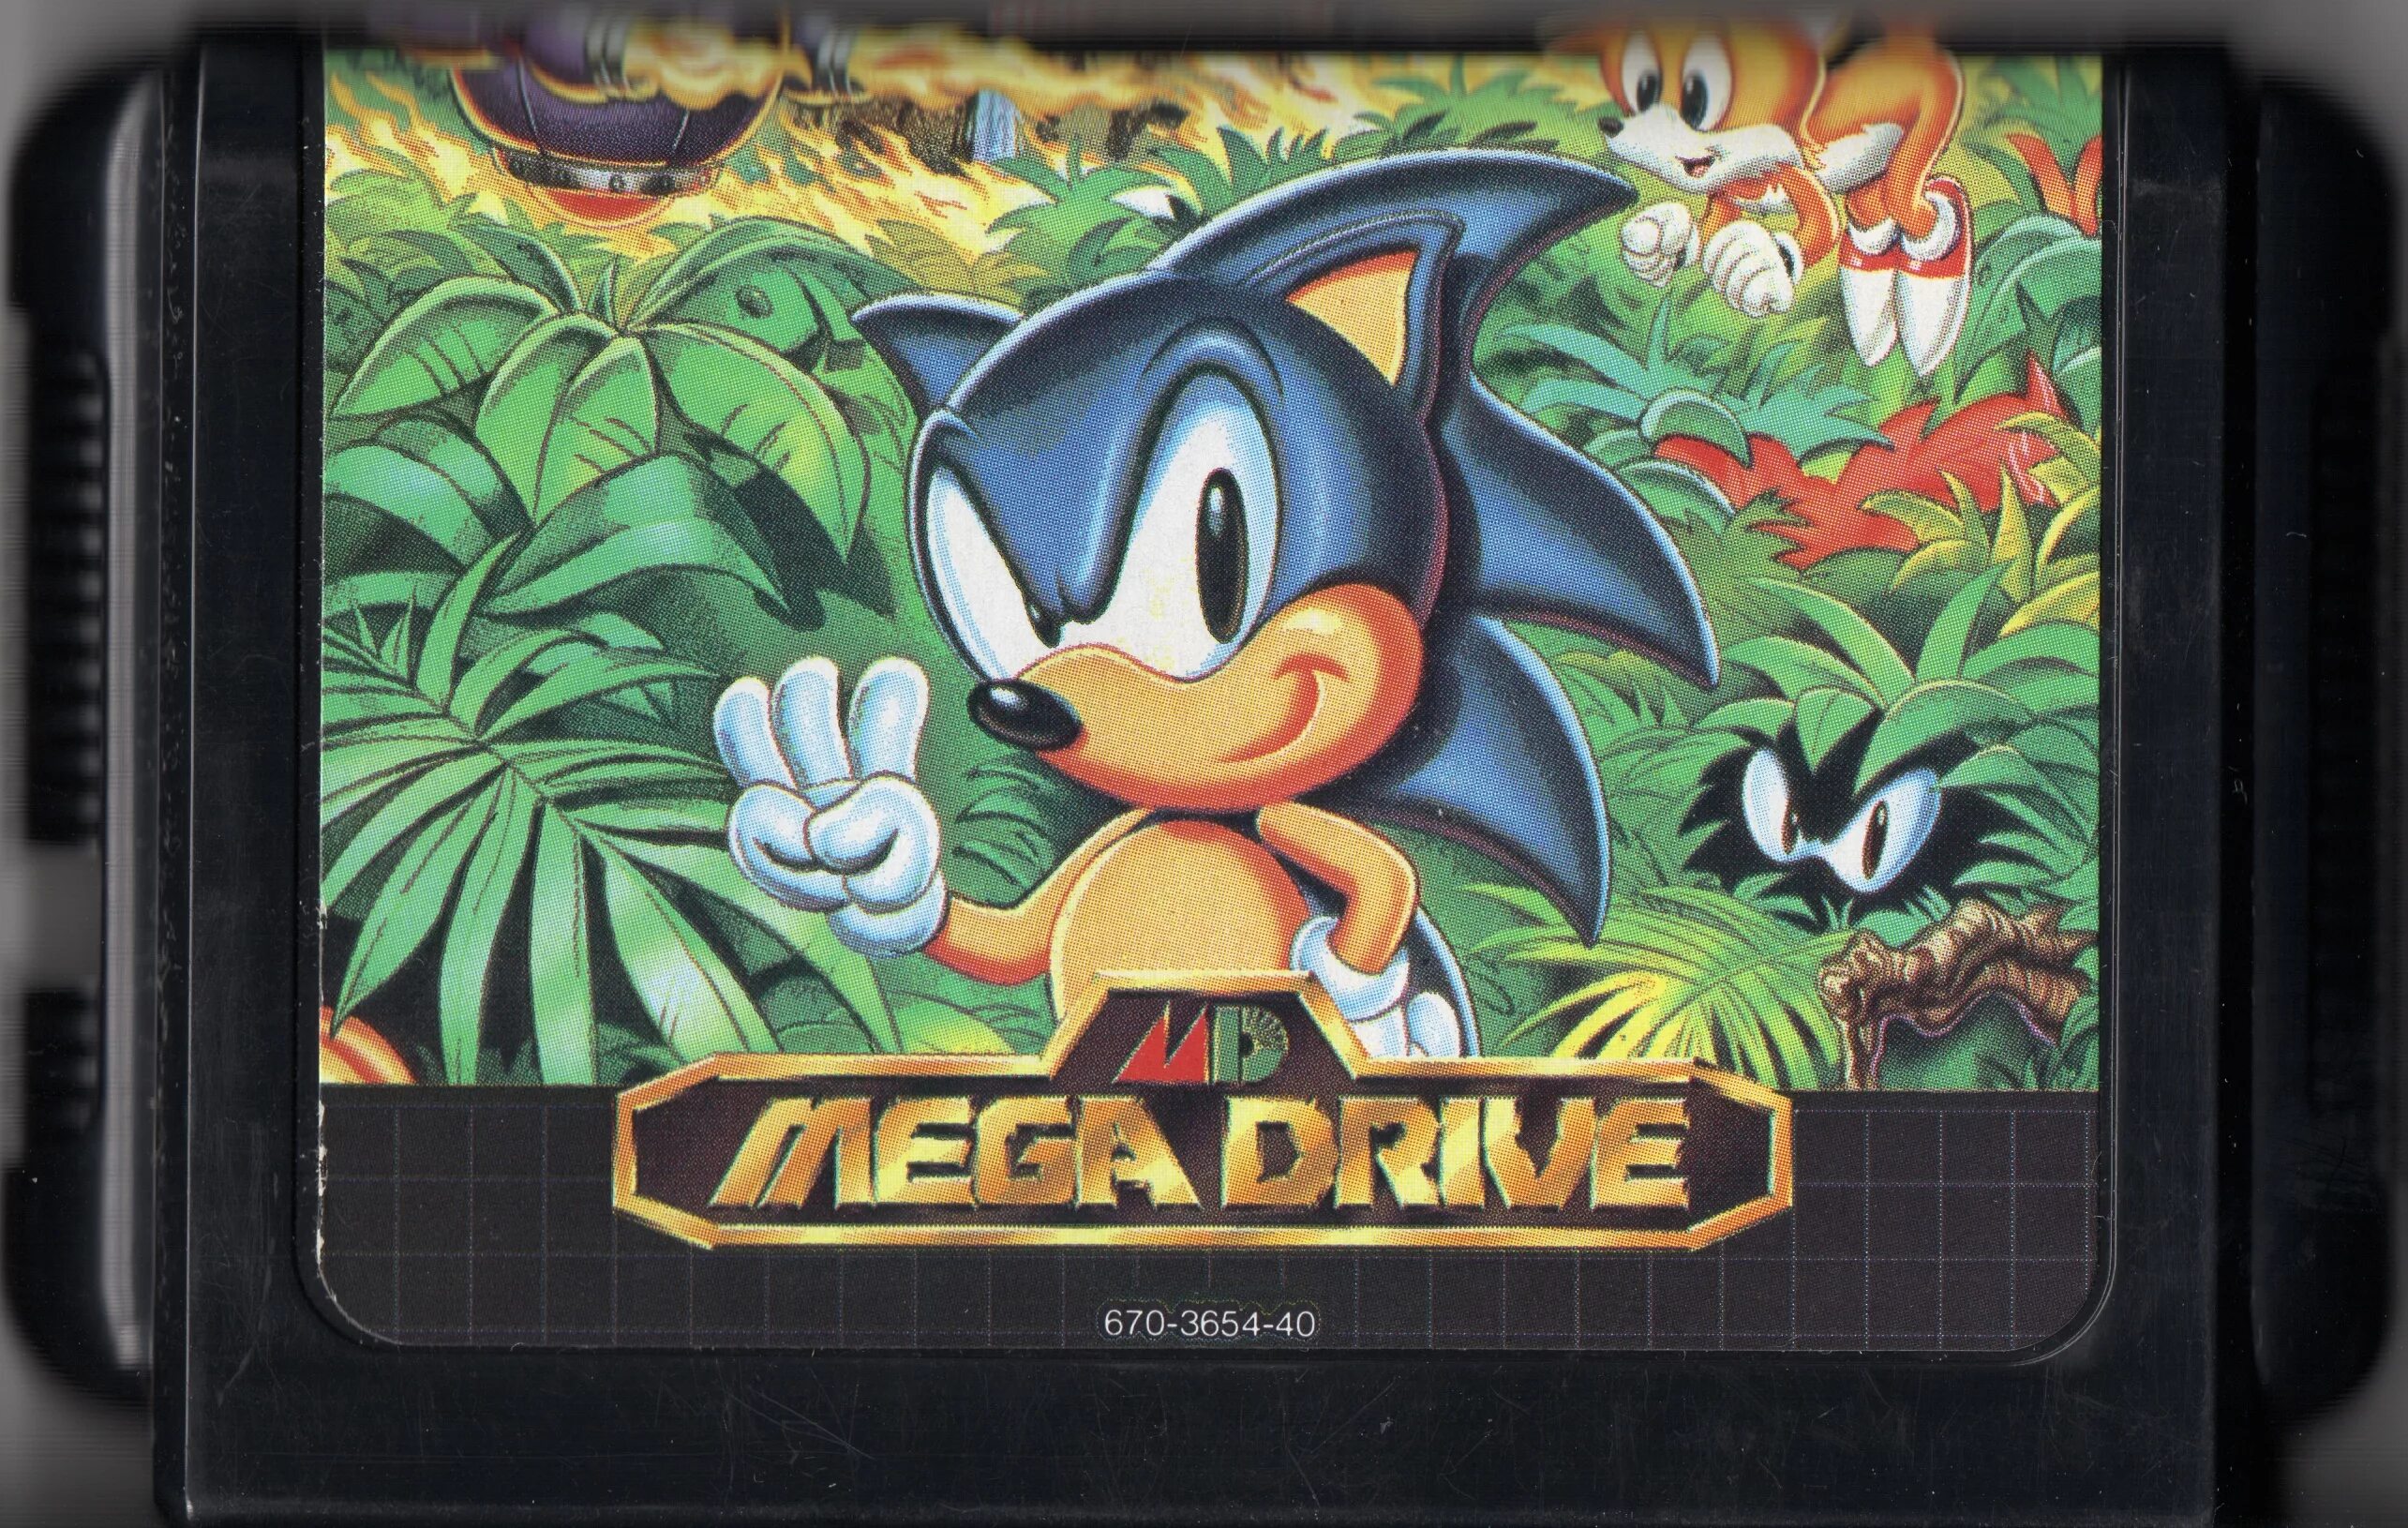 Sega Mega Drive картриджи Sonic. Sega Mega Drive Cartridge Sonic 1. Sega Mega Drive 2 картриджи Sonic. Sonic 3 Sega Mega Drive. Игра сега картриджи